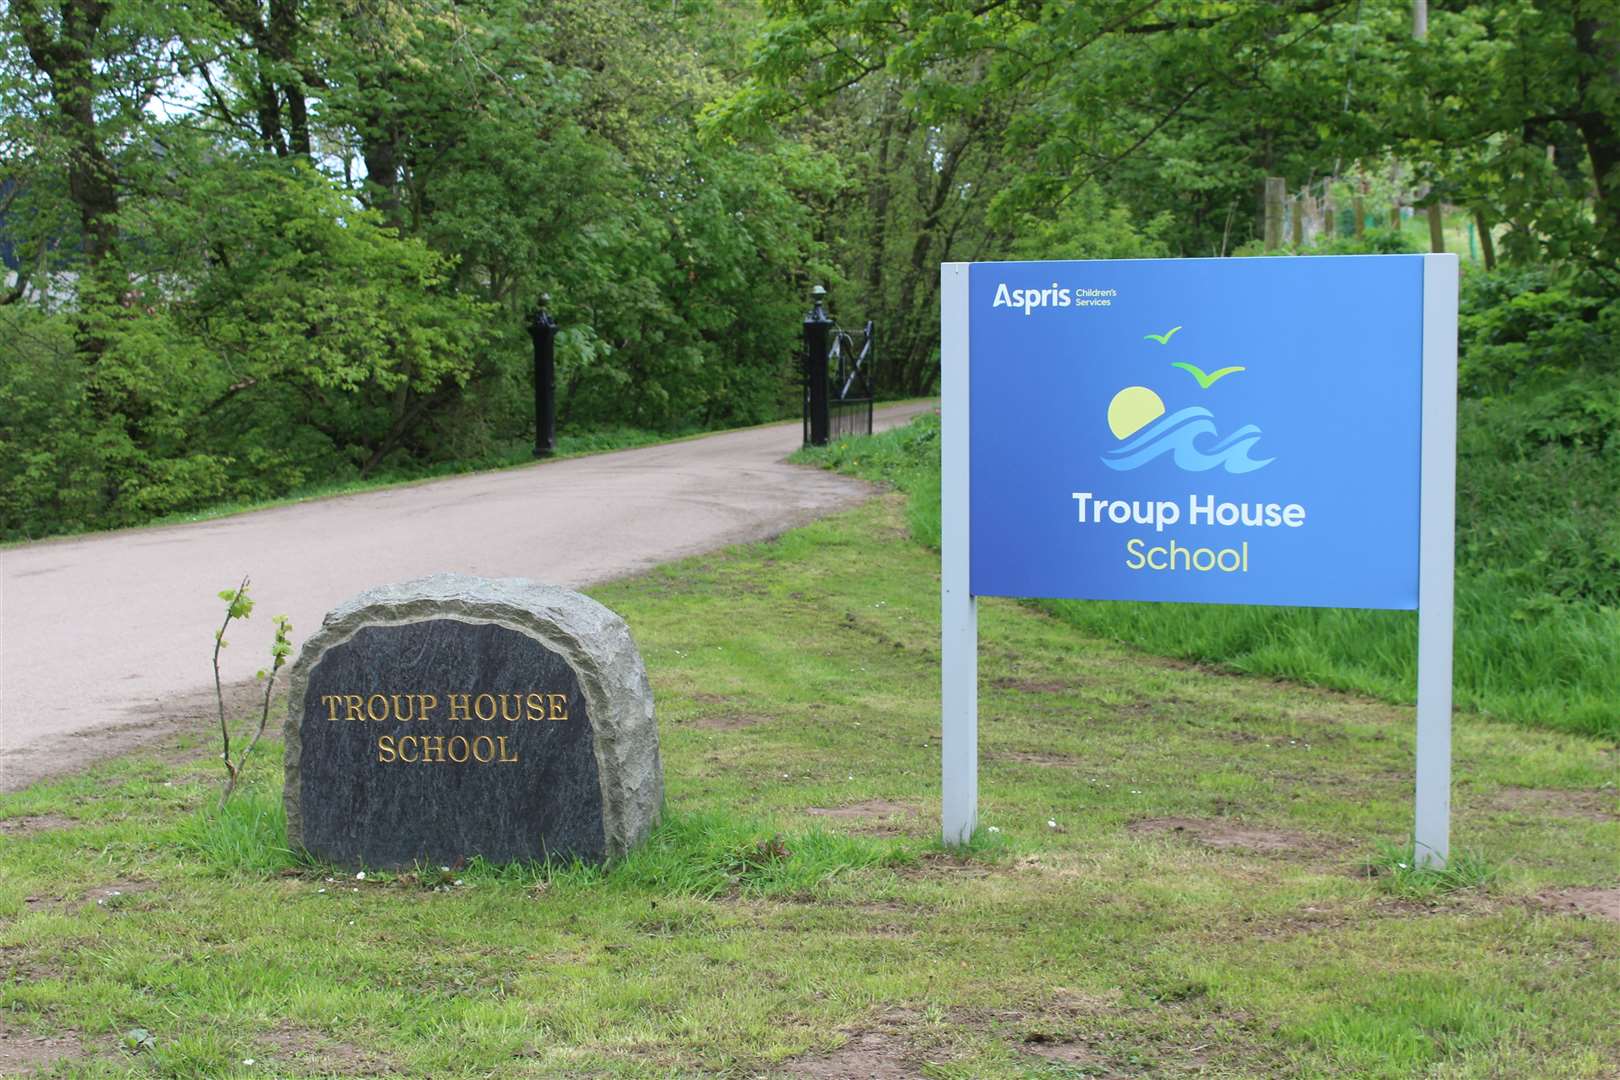 Troup House School is based near Gardenstown.